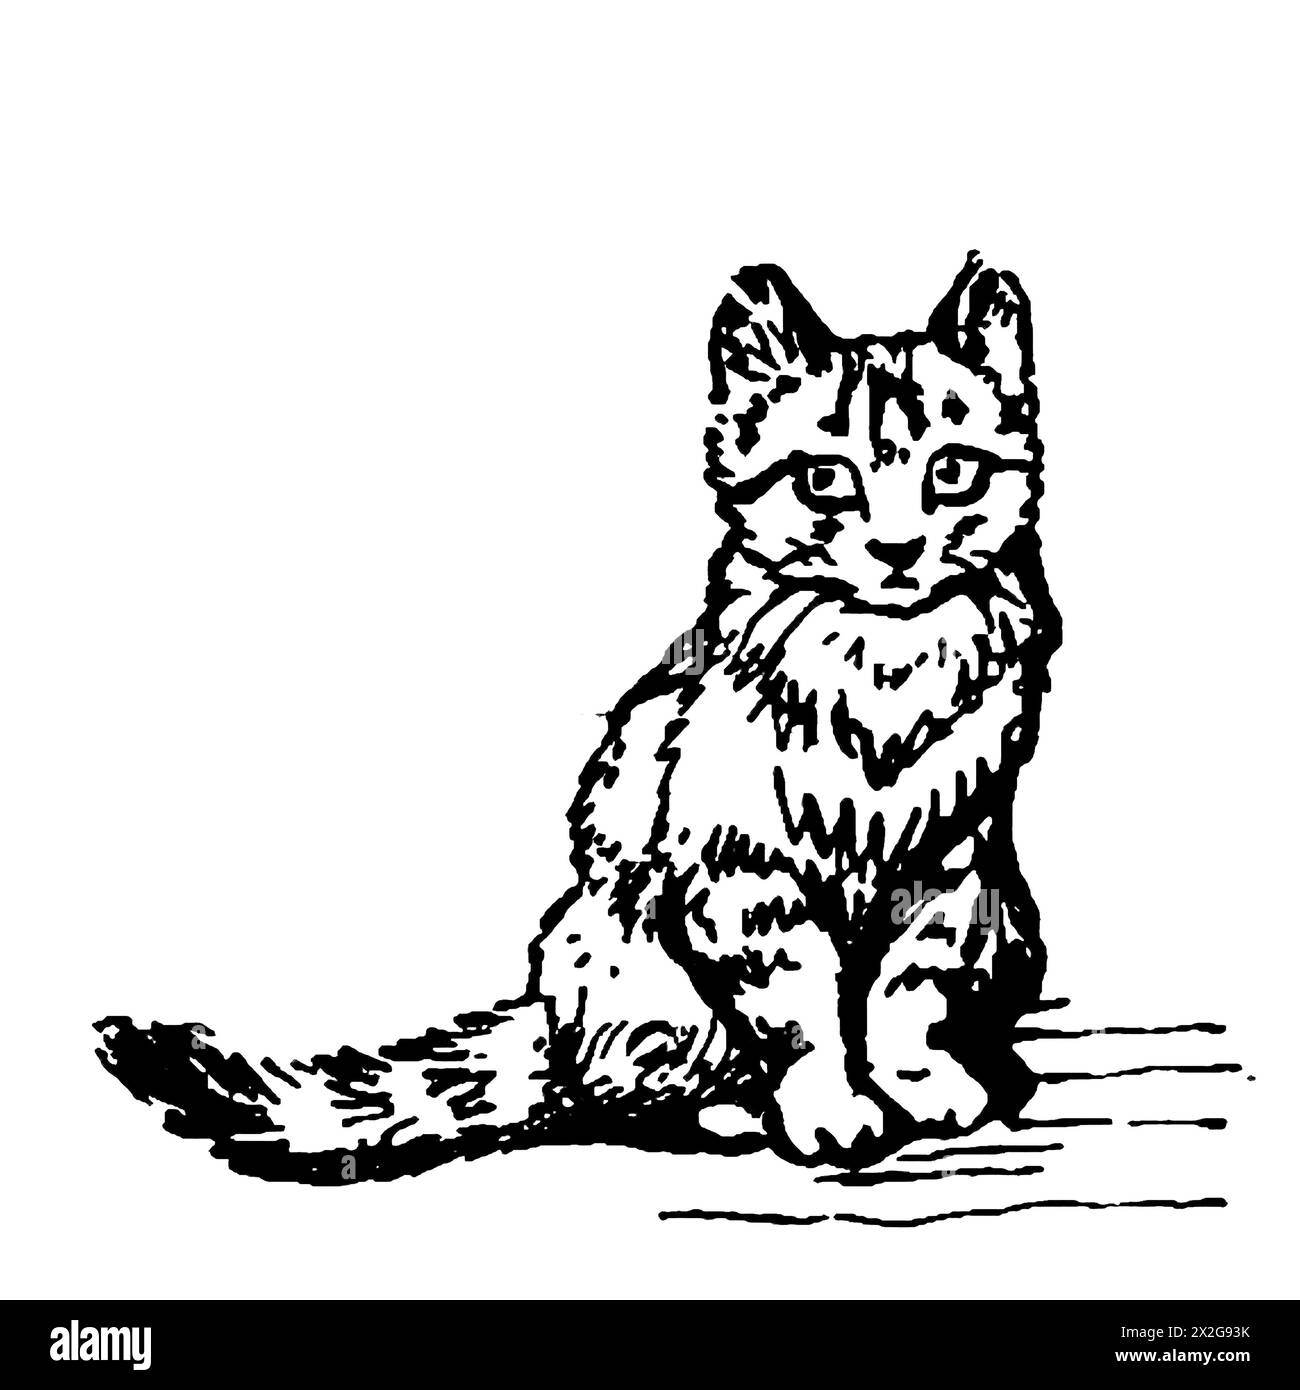 Esquisse de contour noir et blanc d'un chat Banque D'Images